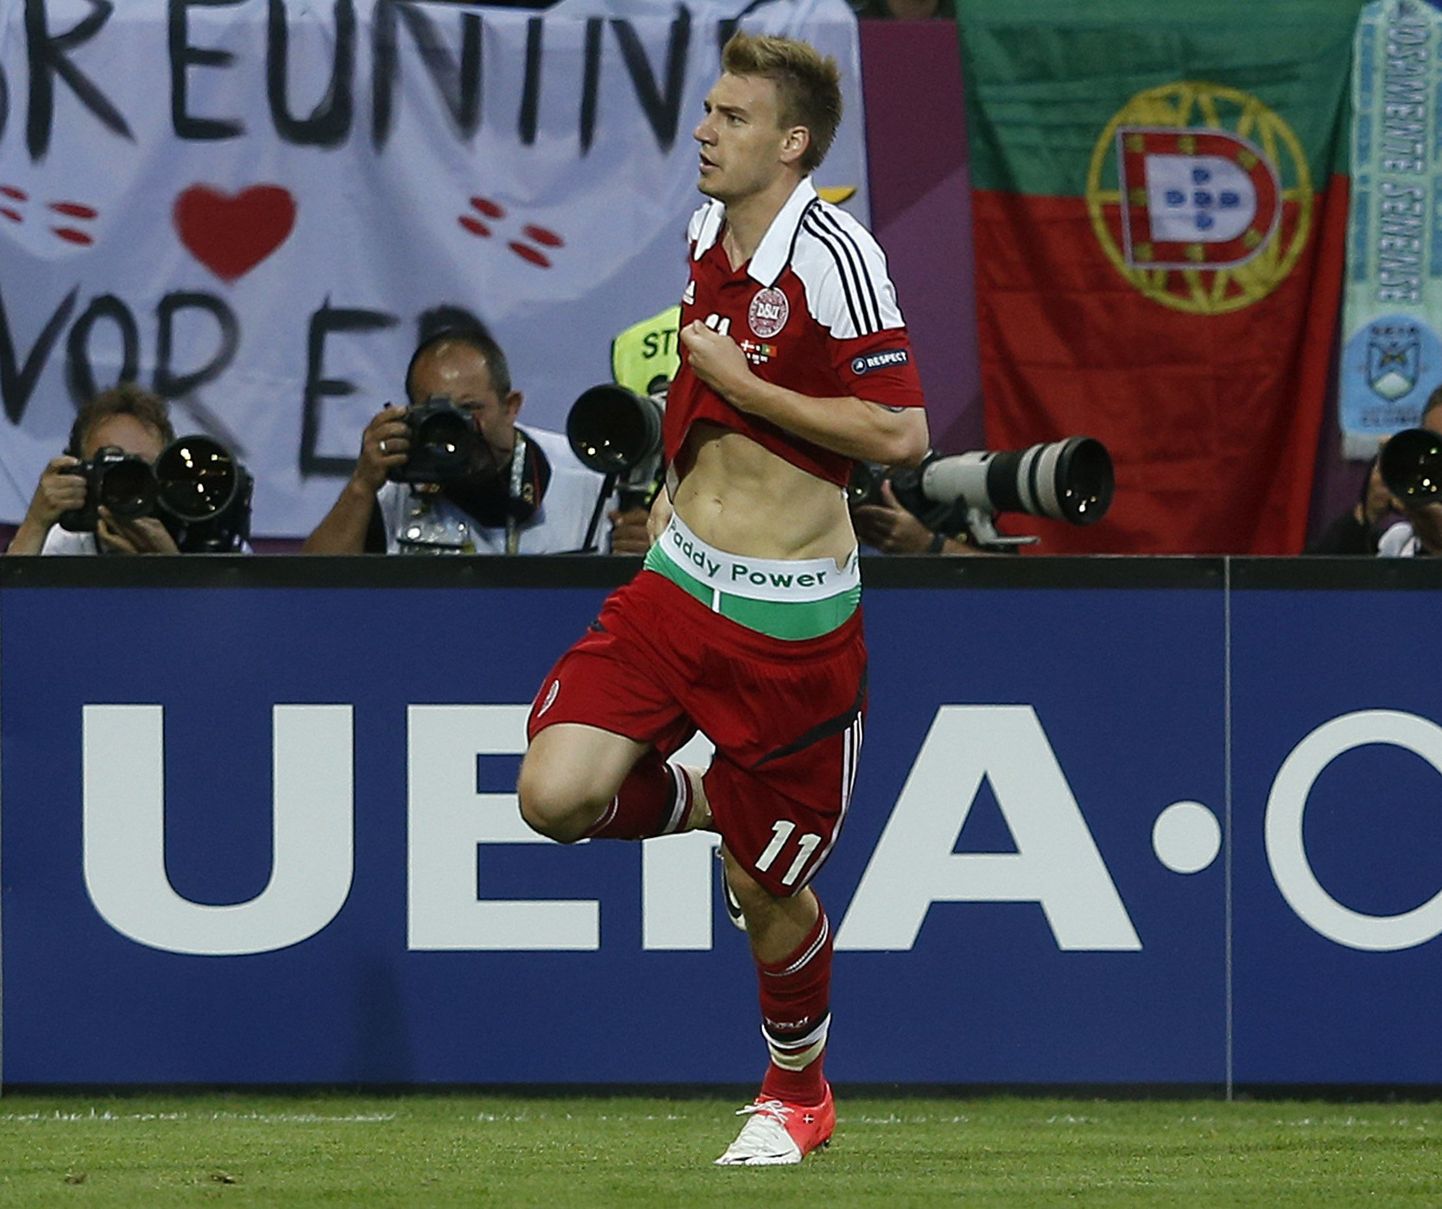 Taani jalgpallikoondislane Nicklas Bendtner sai Euroopa Jalgpalliliidult (UEFA) karistada, kuna paljastas väravat tähistades sponsorlogoga aluspüksid.